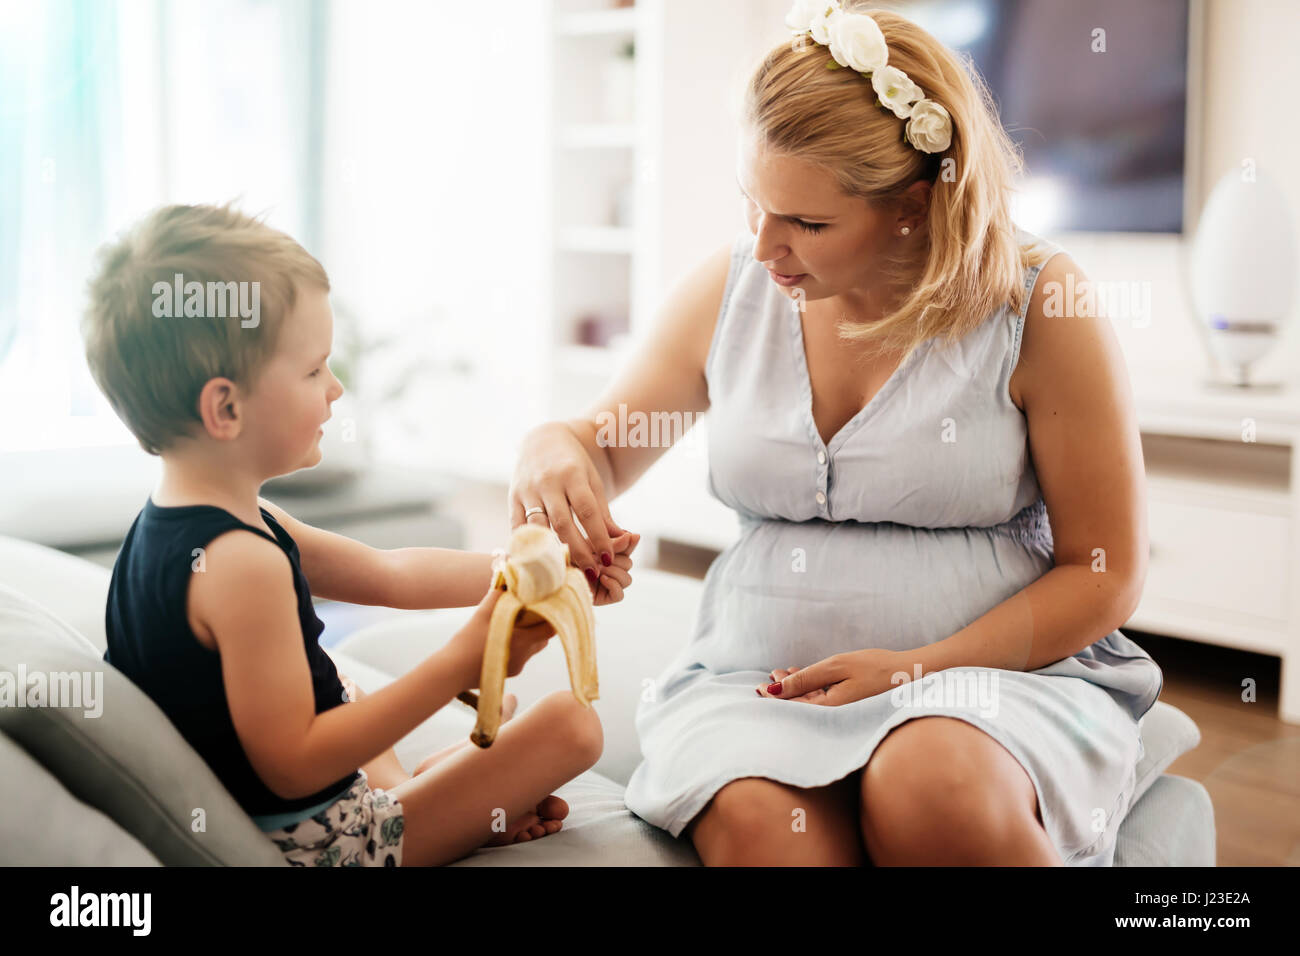 Schöne Mutter kuscheln Kind während eine Banane earing Stockfoto